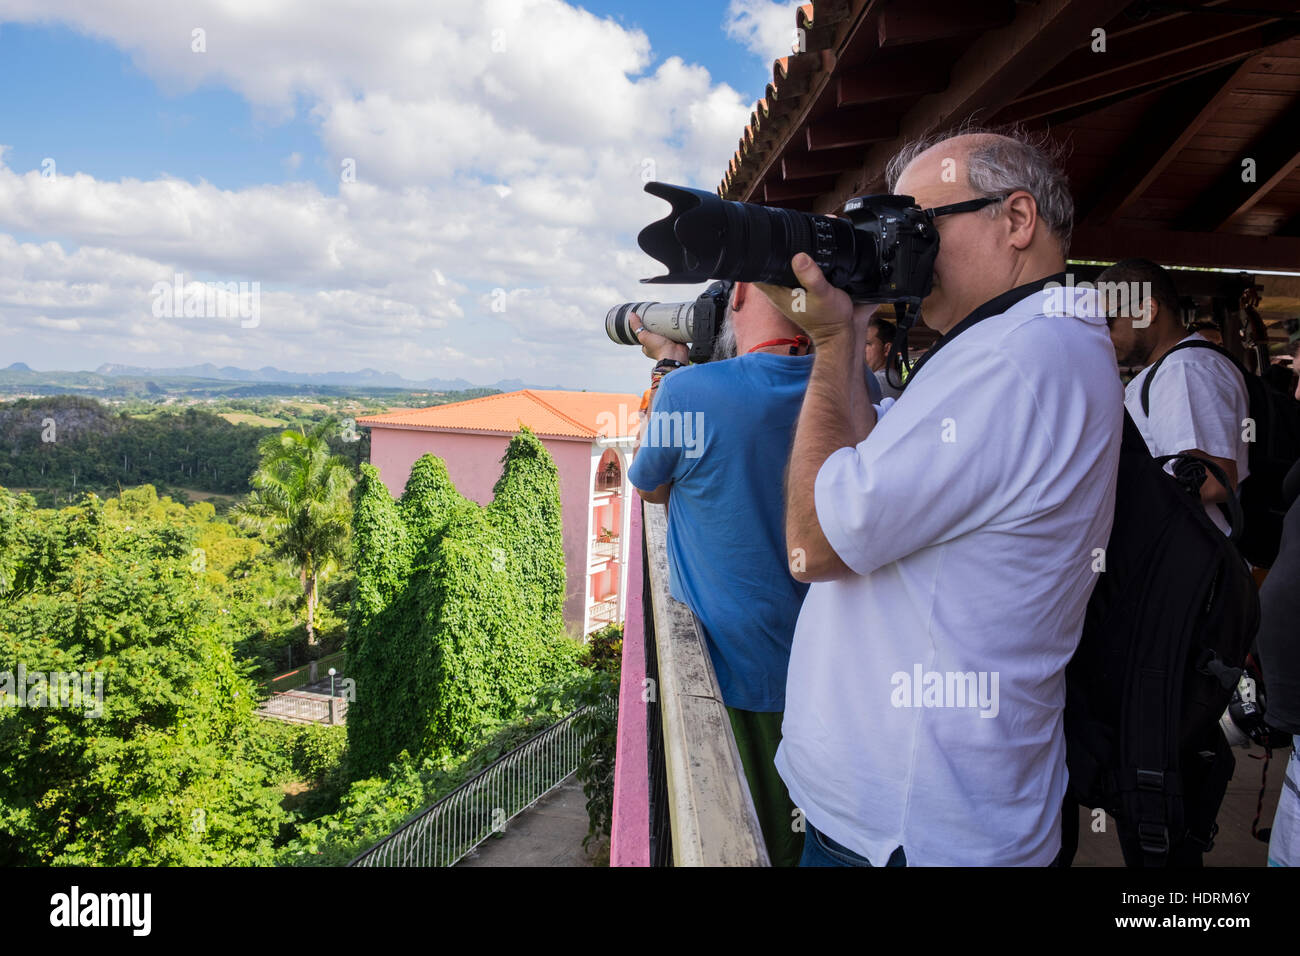 Los fotógrafos disparar escenas desde un punto de vista en el Valle de Viñales, Cuba Foto de stock